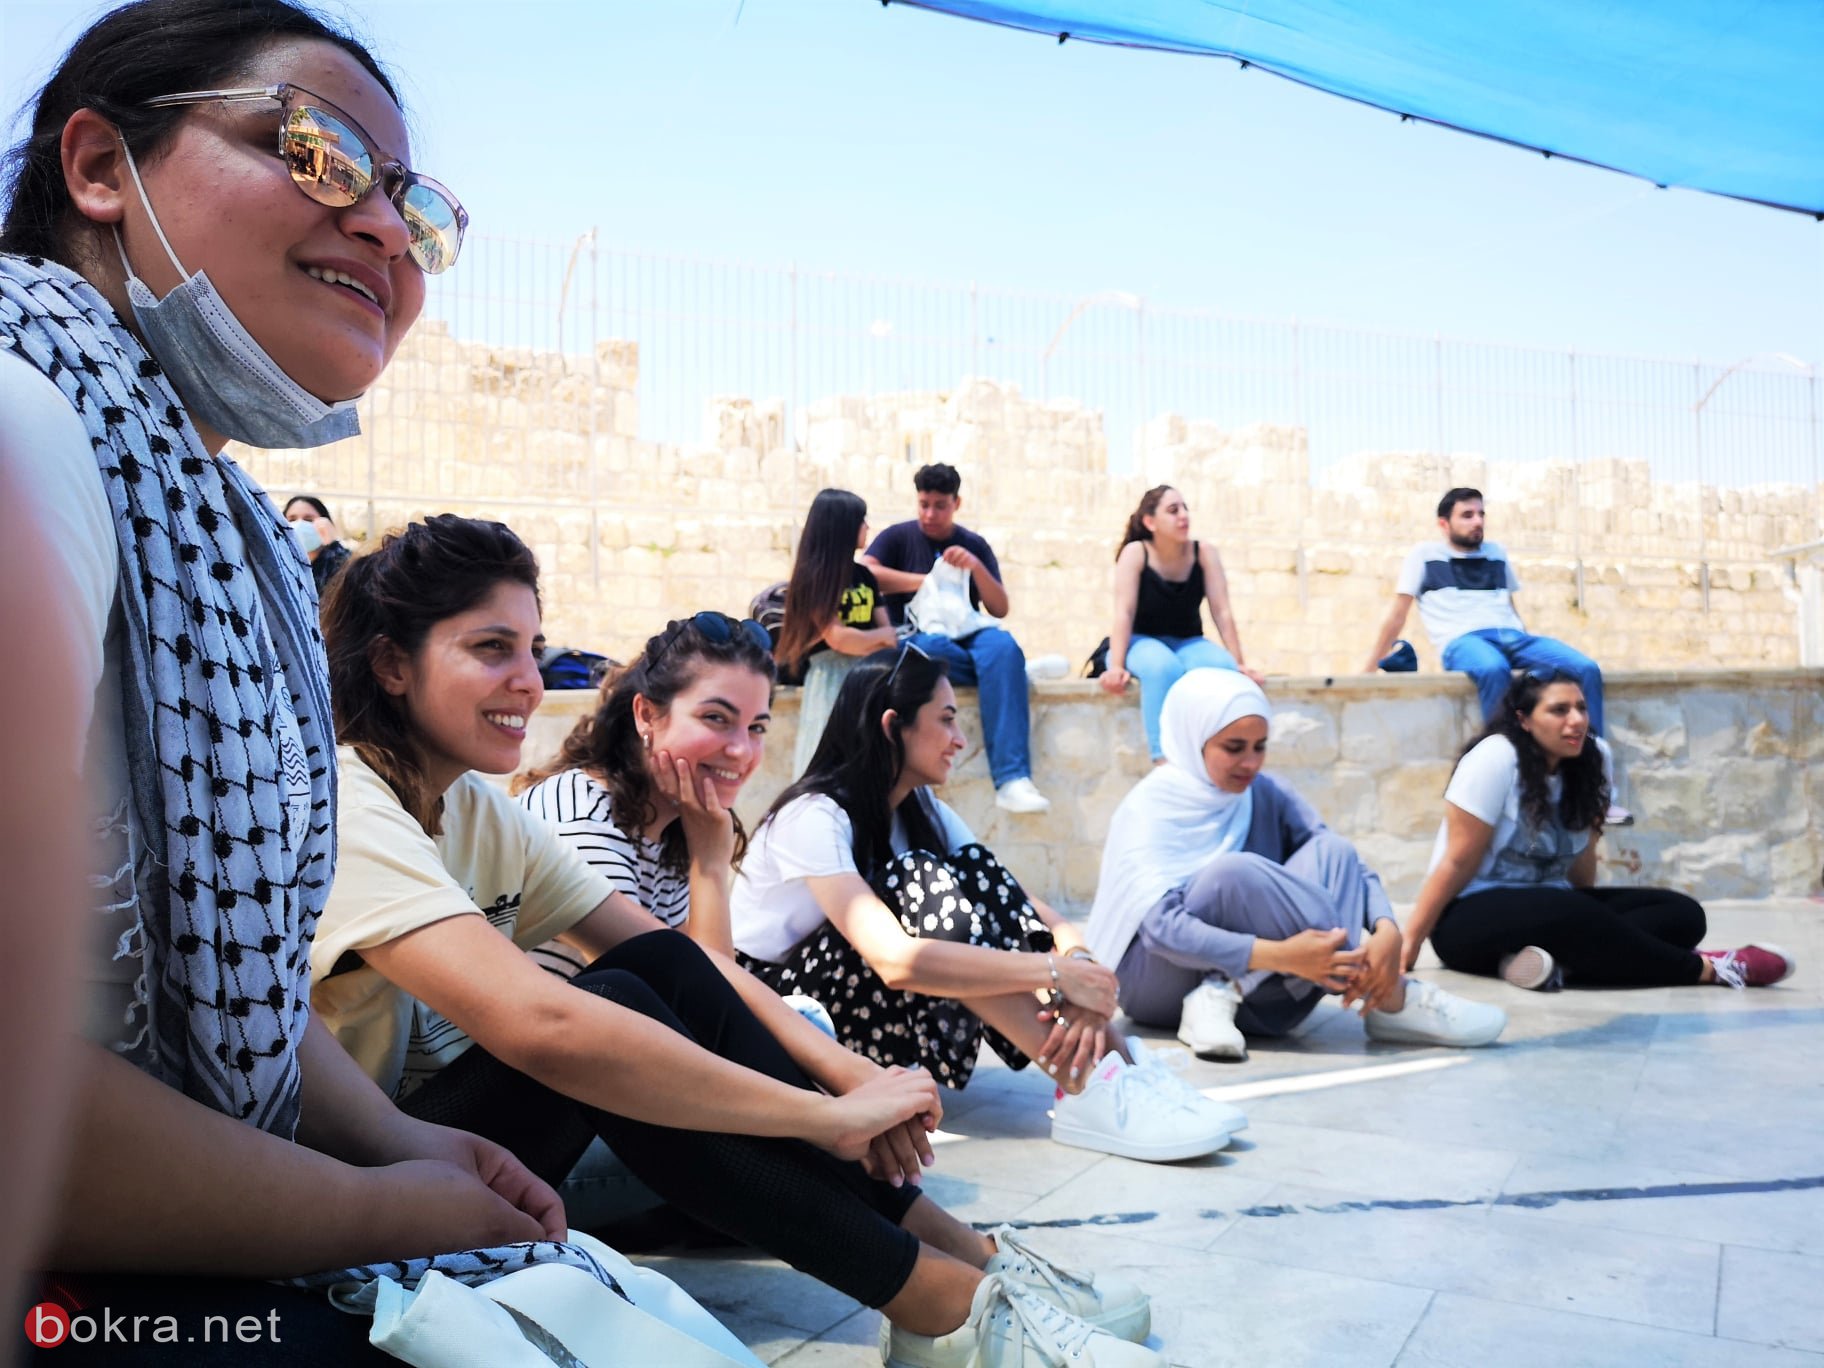 مجموعات مشروع "صناعة المكان" في جولة تعليمية ودراسة للحيّز الفلسطيني في القدس-7